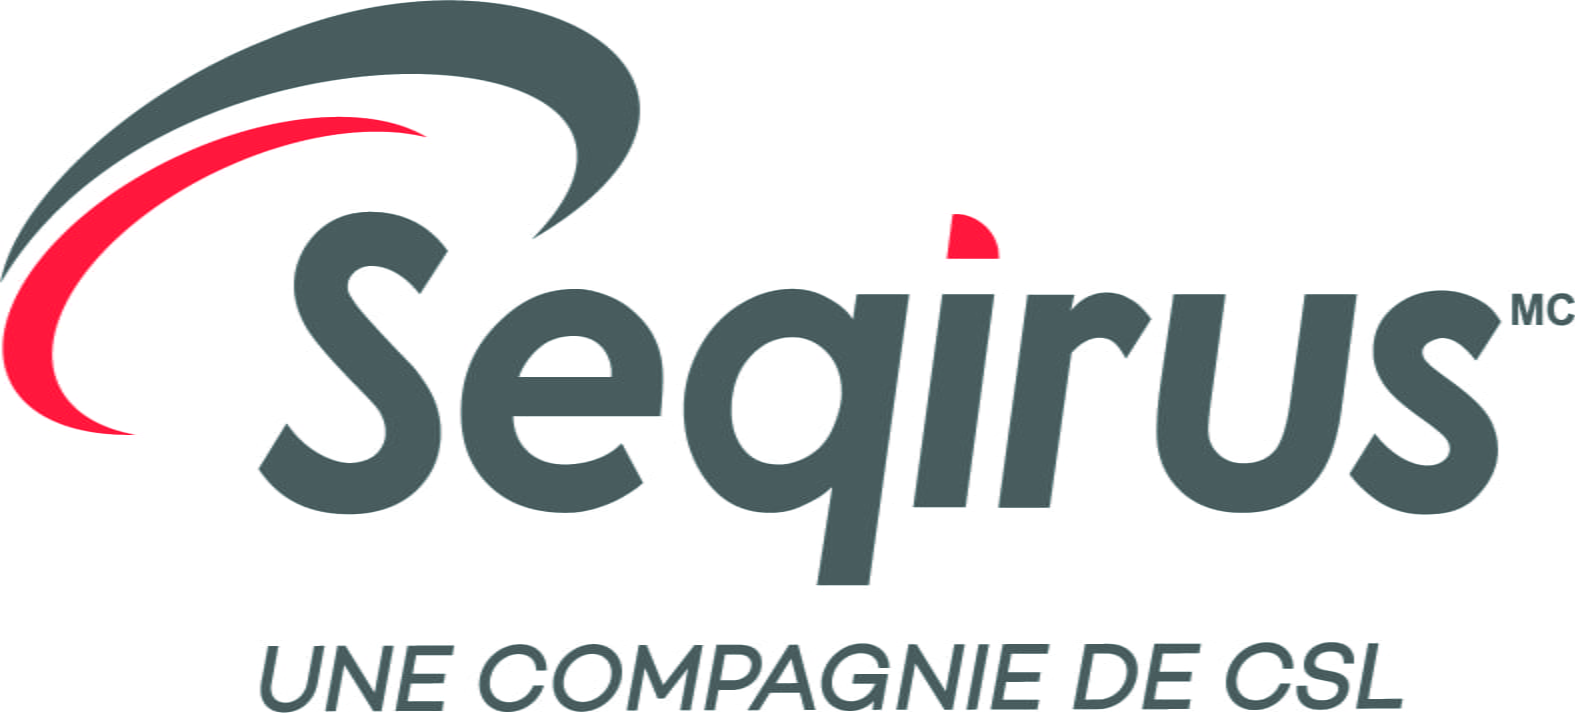 Seqirus logo